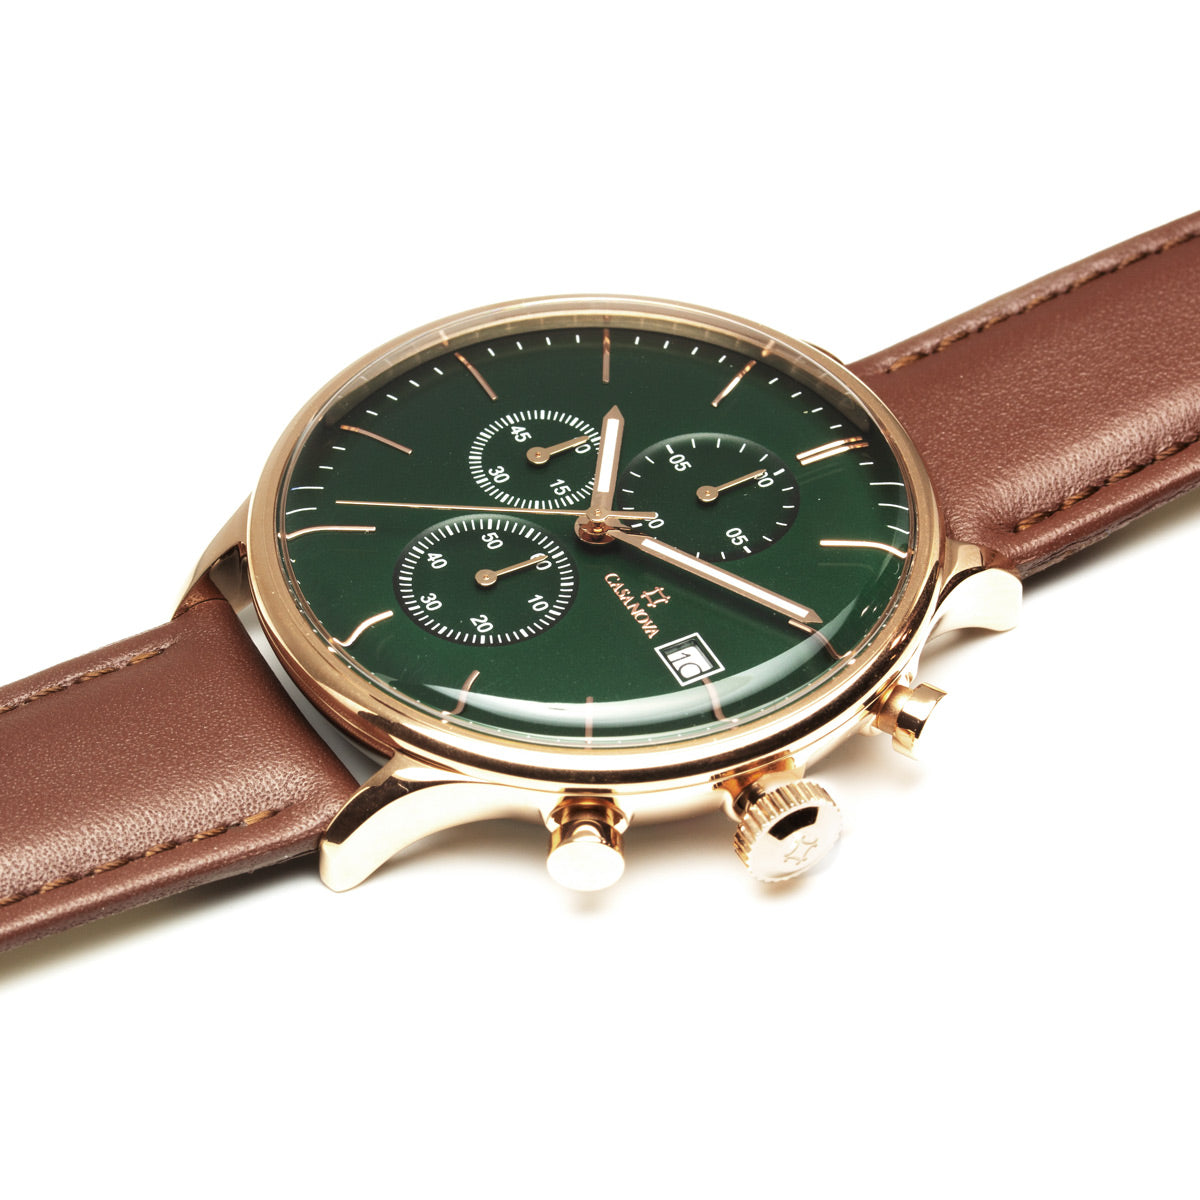 Reloj Elegante Gold Marrón con Dial Verde